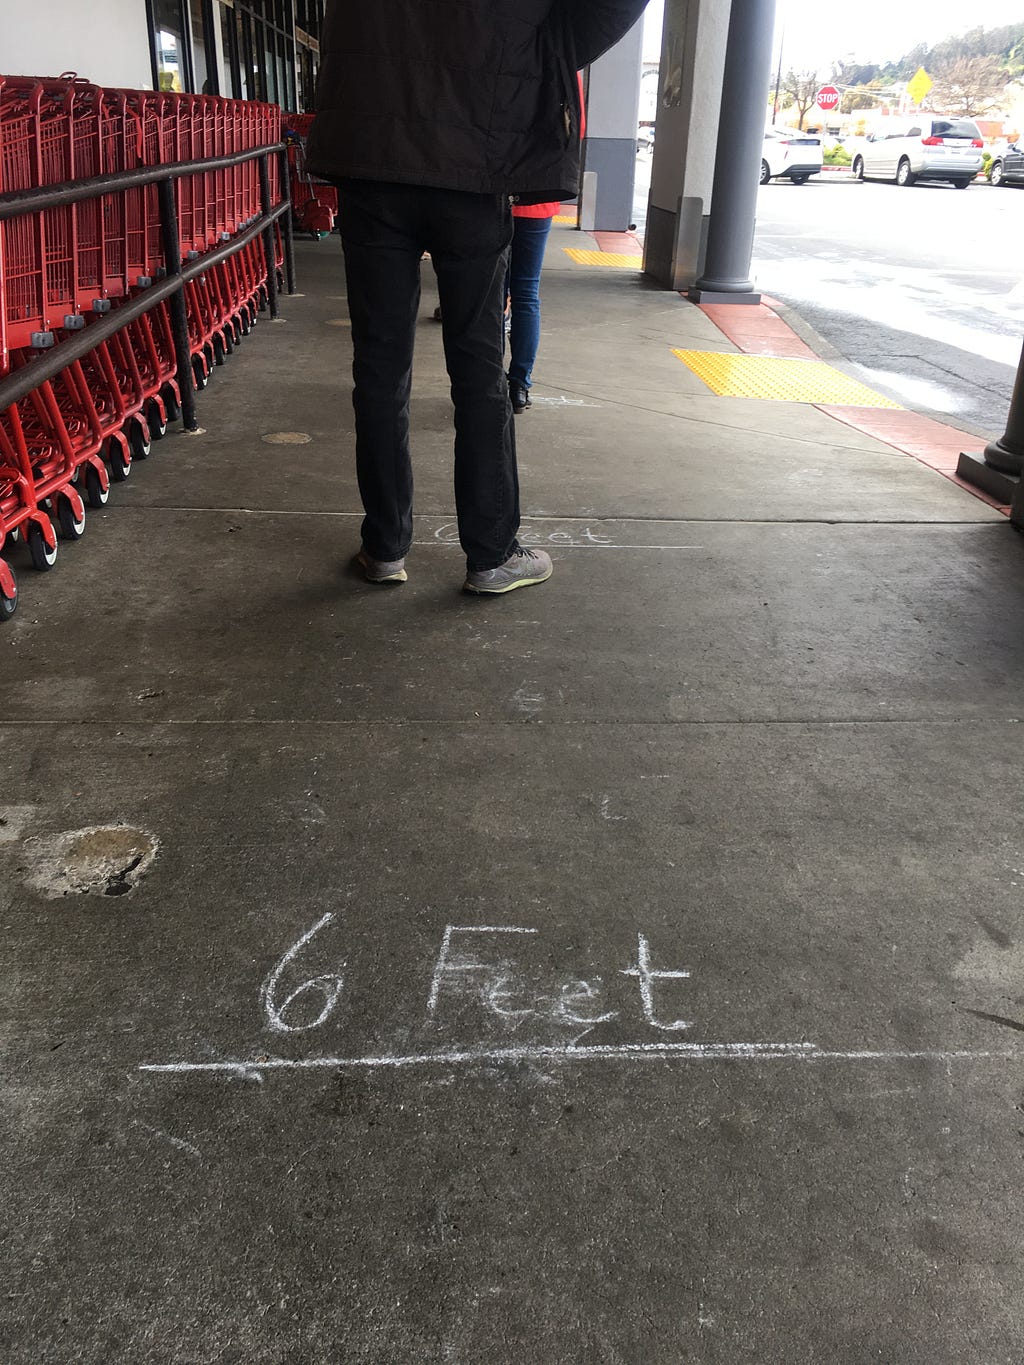 Sidewalk with 6 Feet written between shoppers outside Trader Joe’s